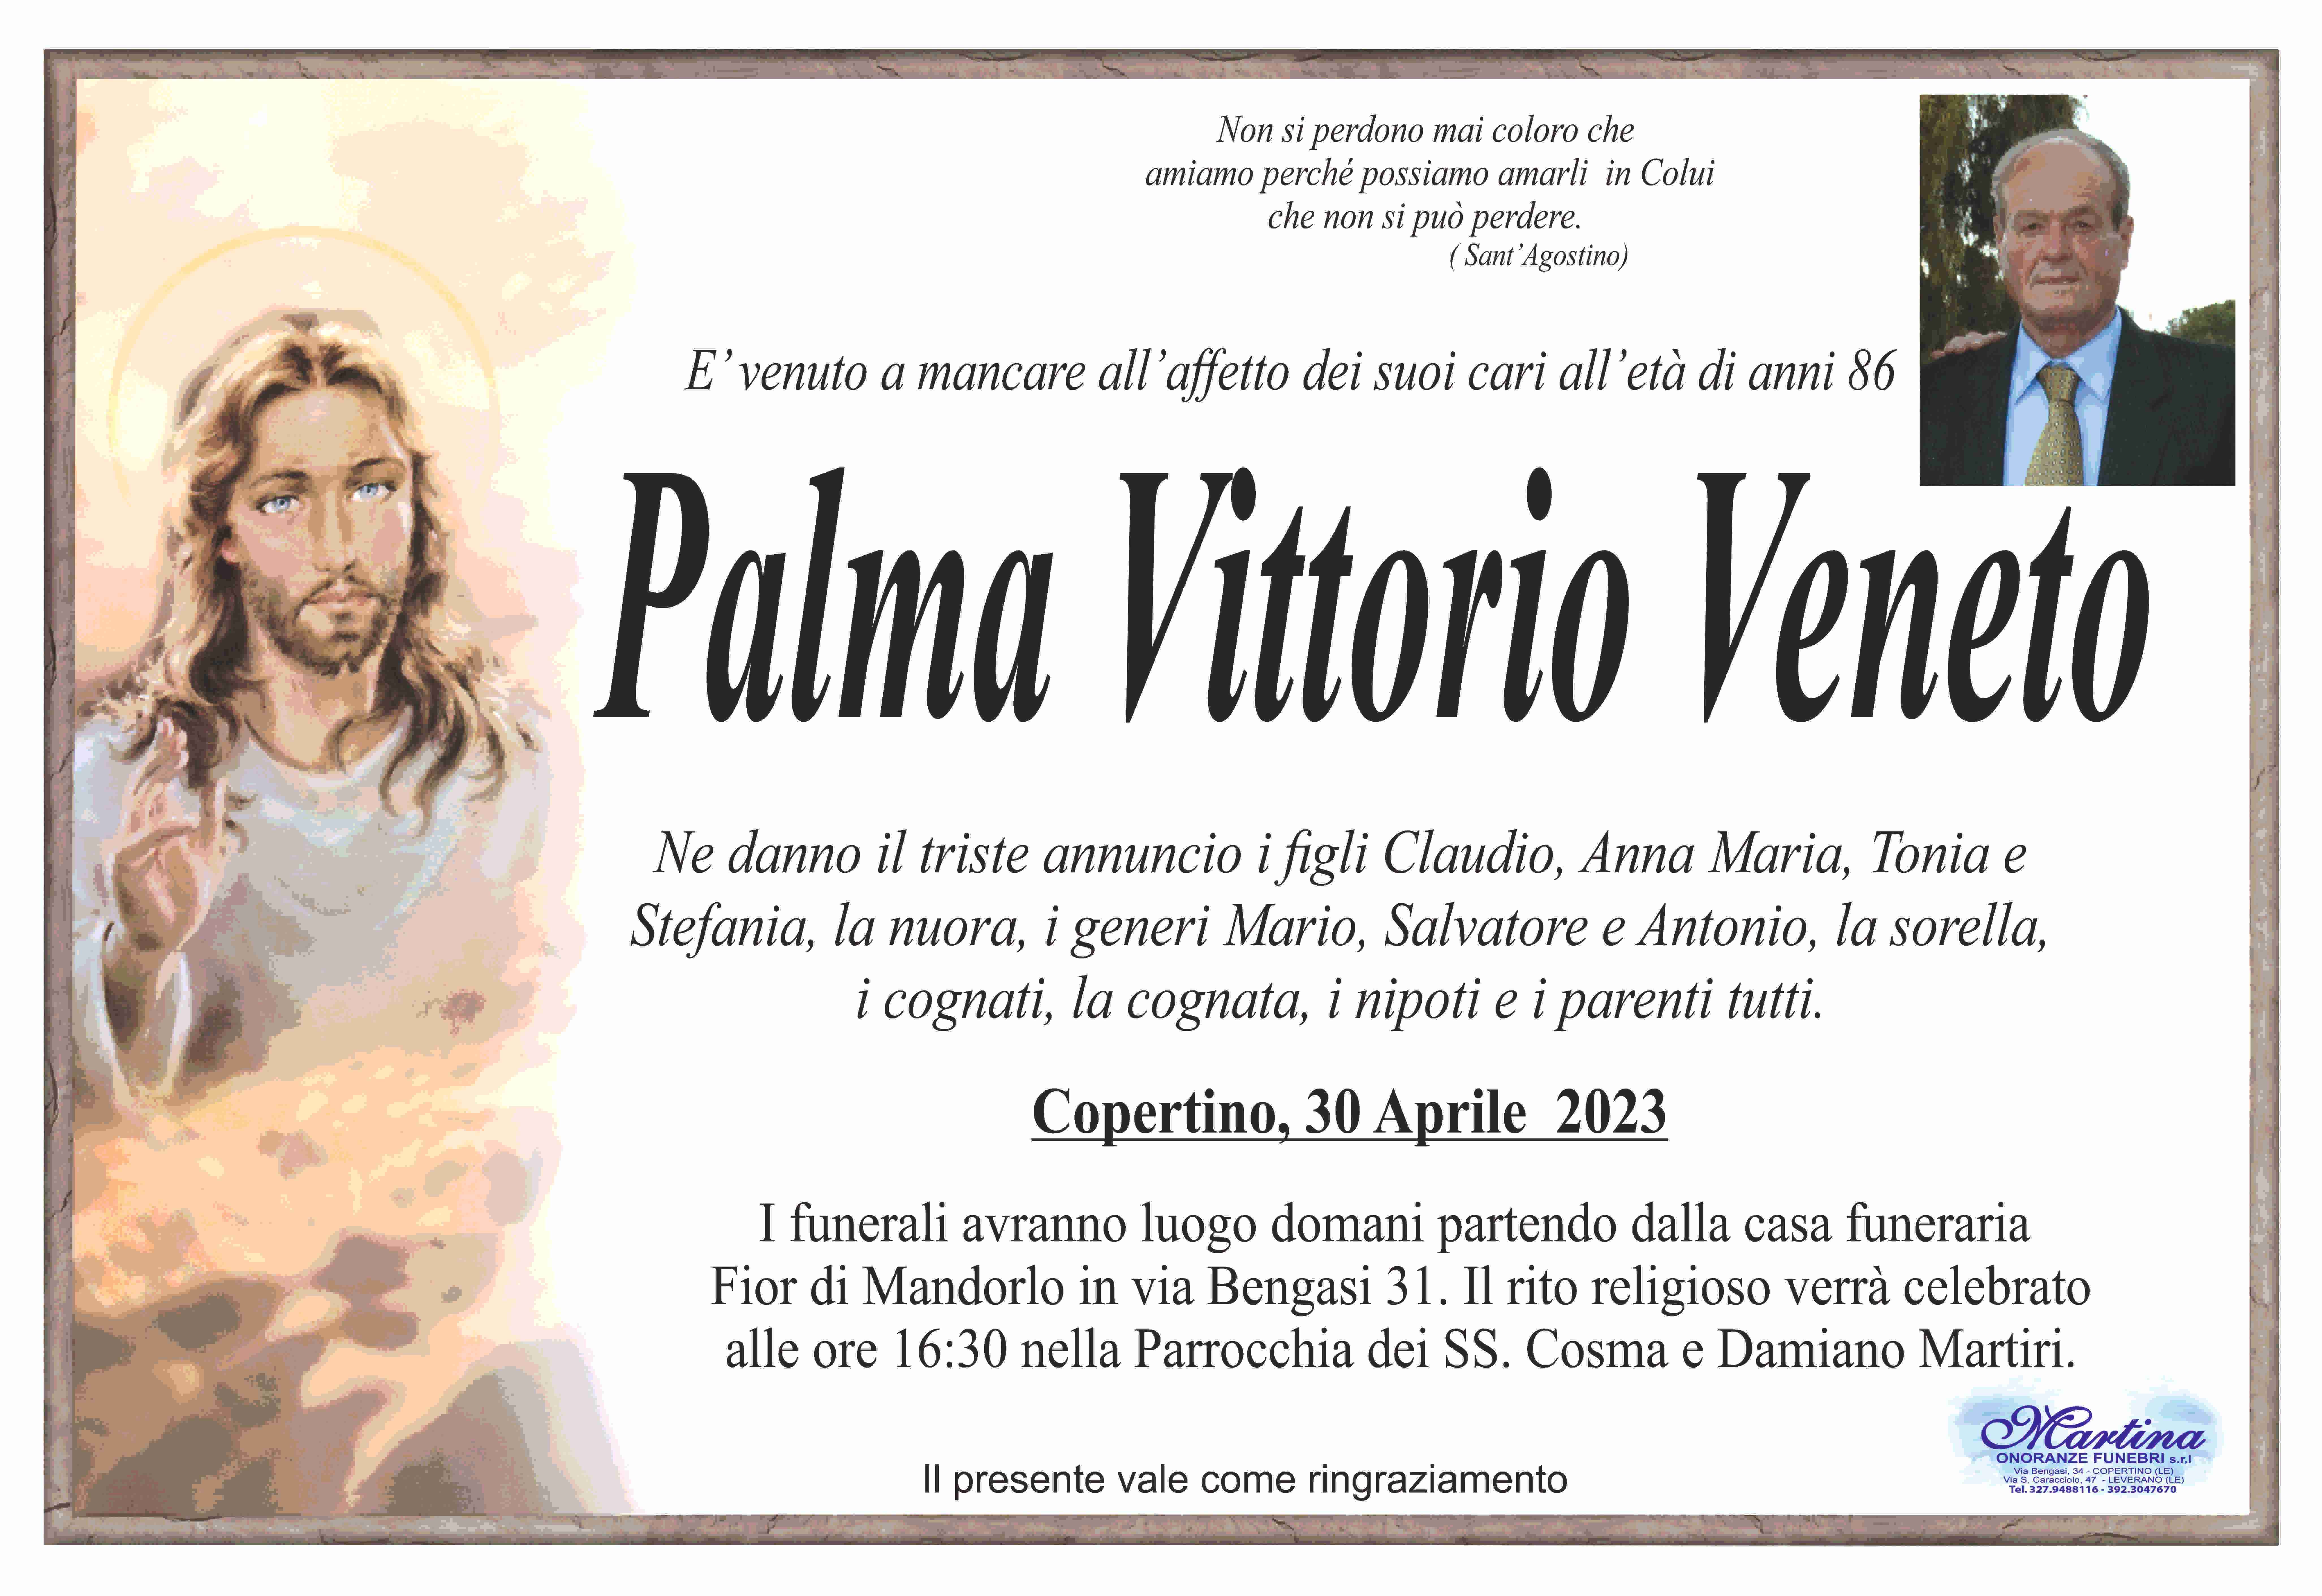 Vittorio Veneto Palma